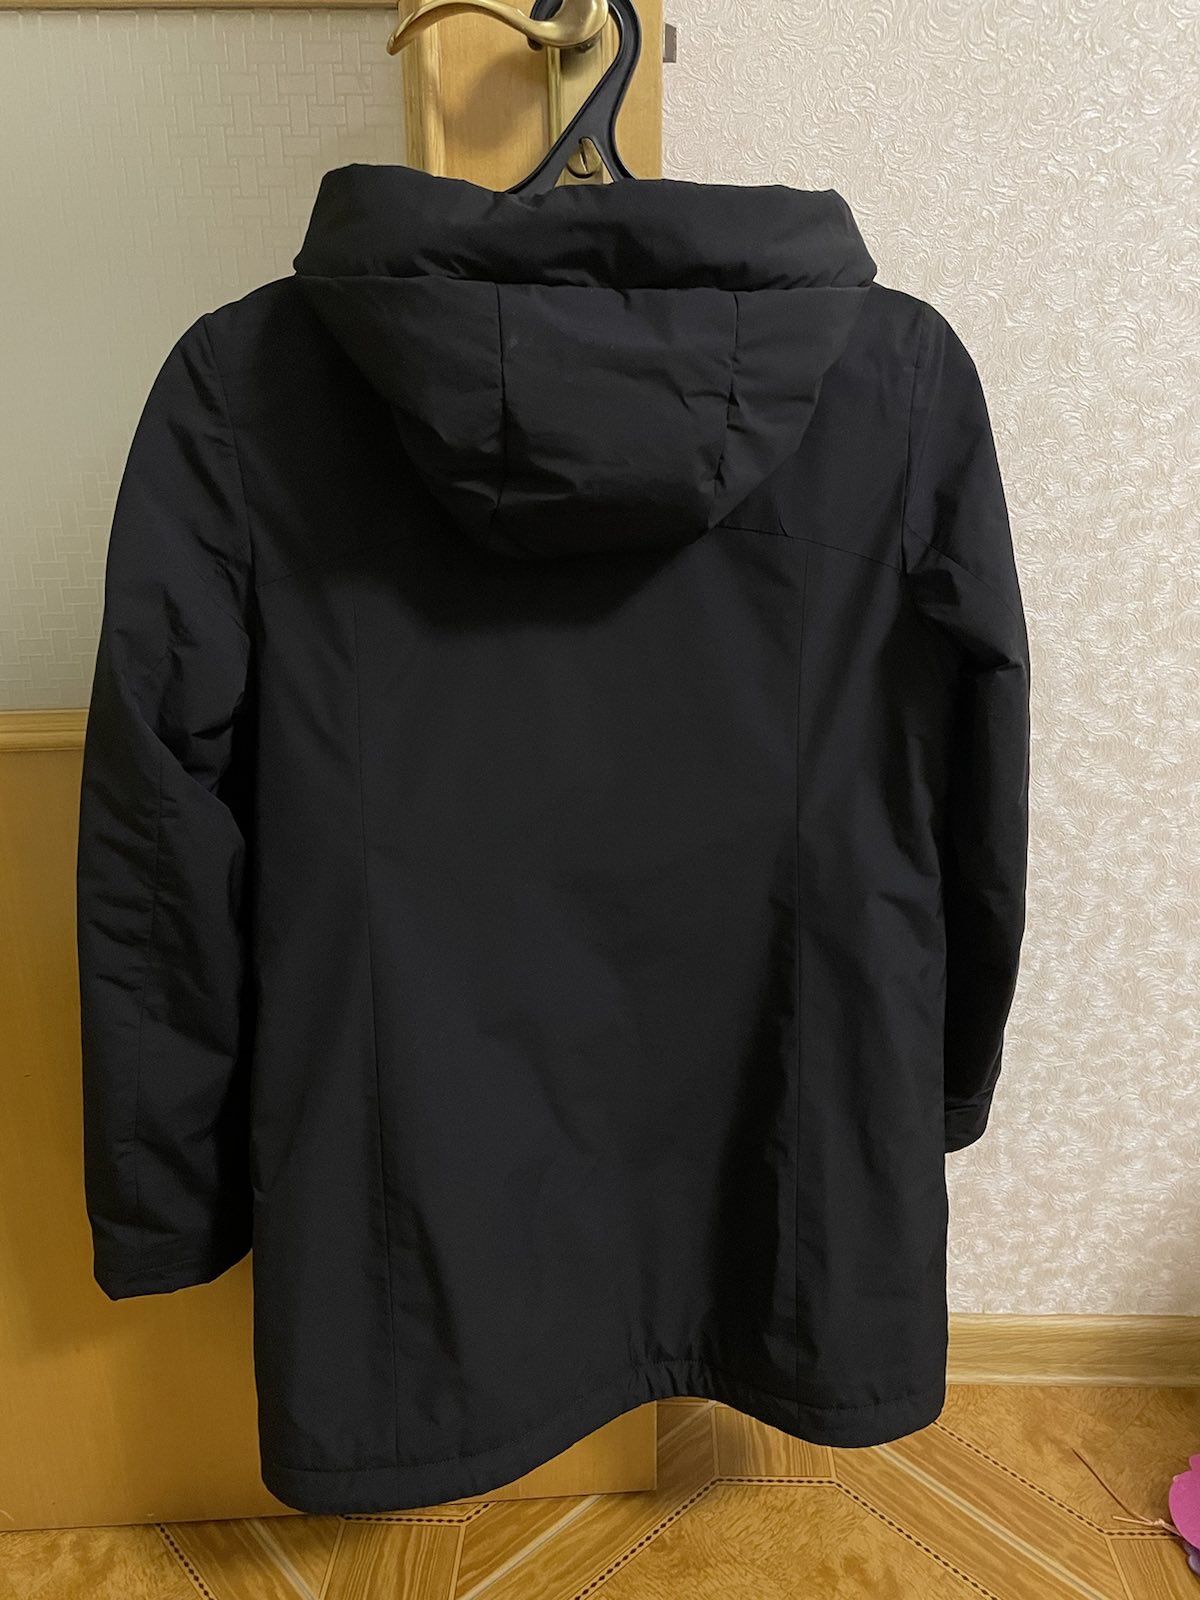 Демисезонная курточка черного цвета в состоянии новой